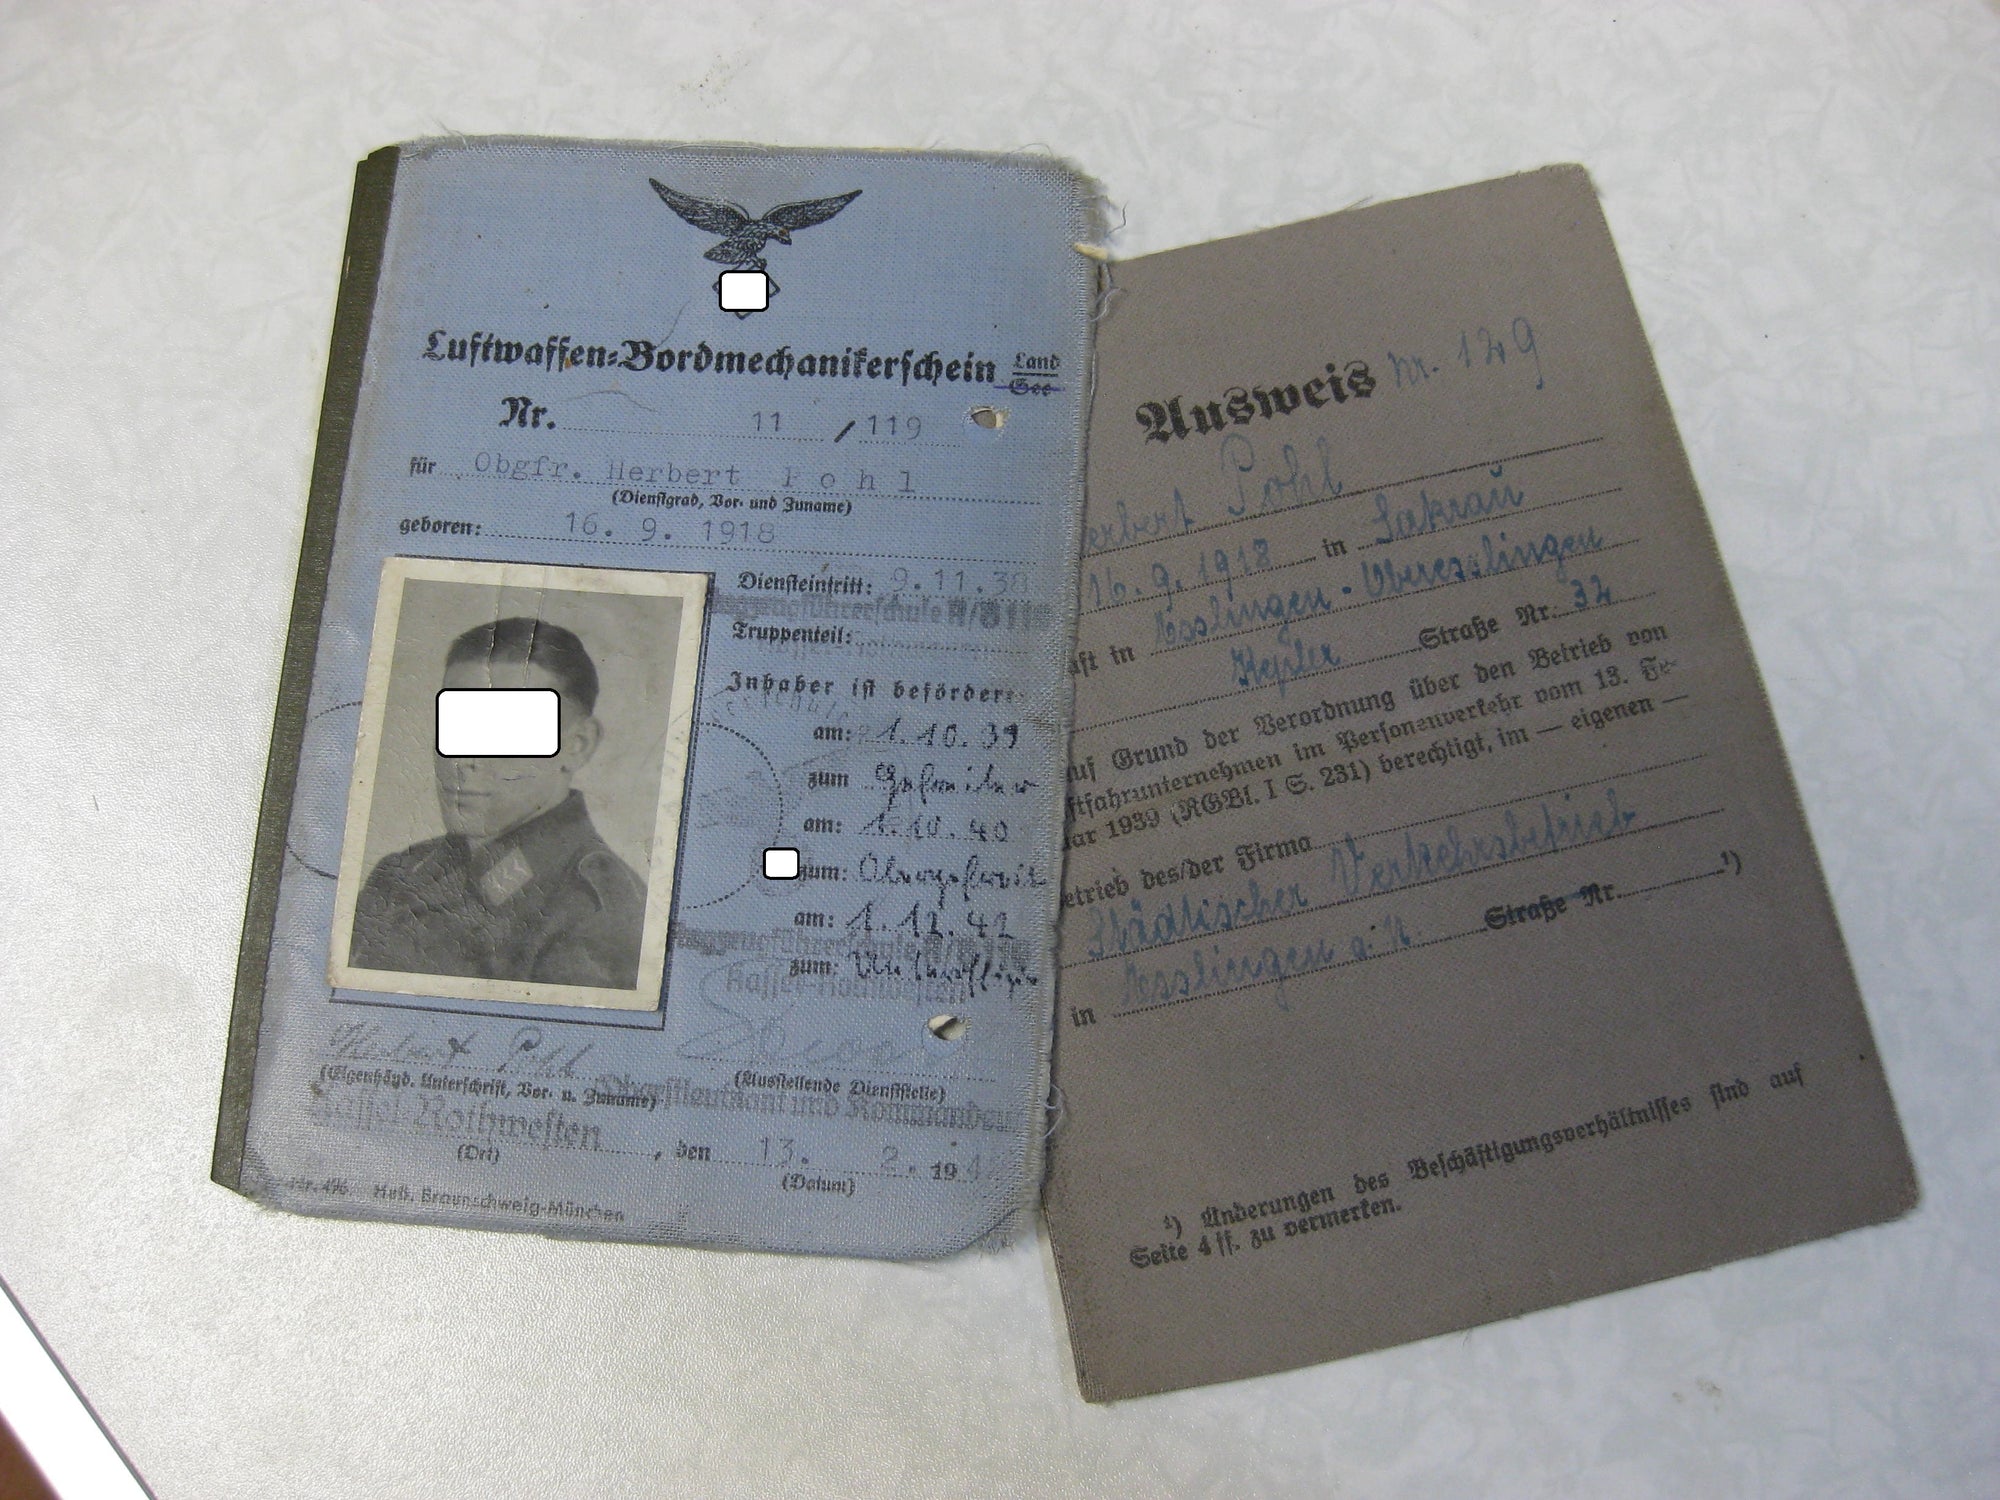 H.W. Luftwaffen Bordmechanikerschein Flieger